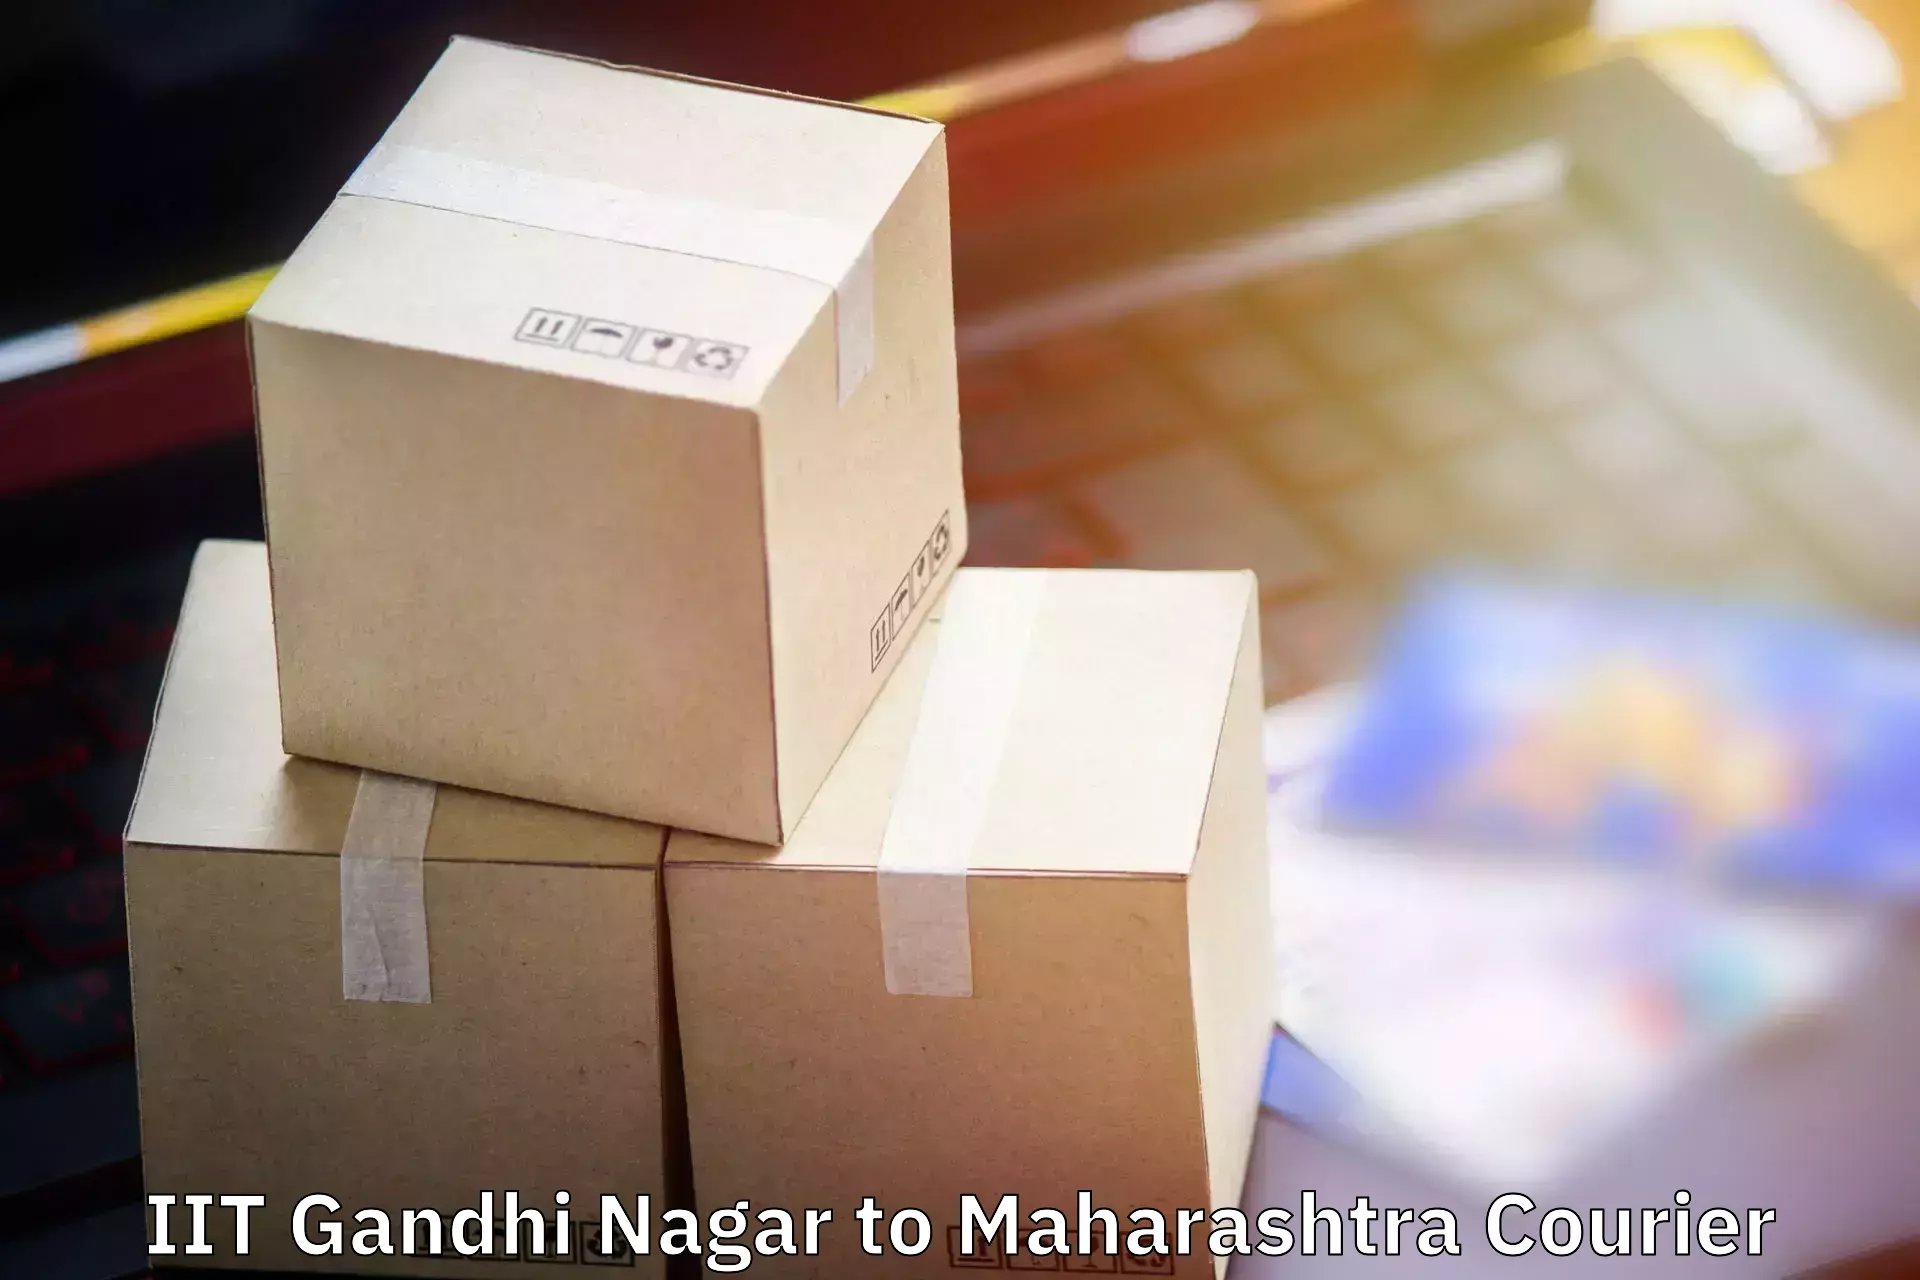 Single item baggage courier IIT Gandhi Nagar to Dadar